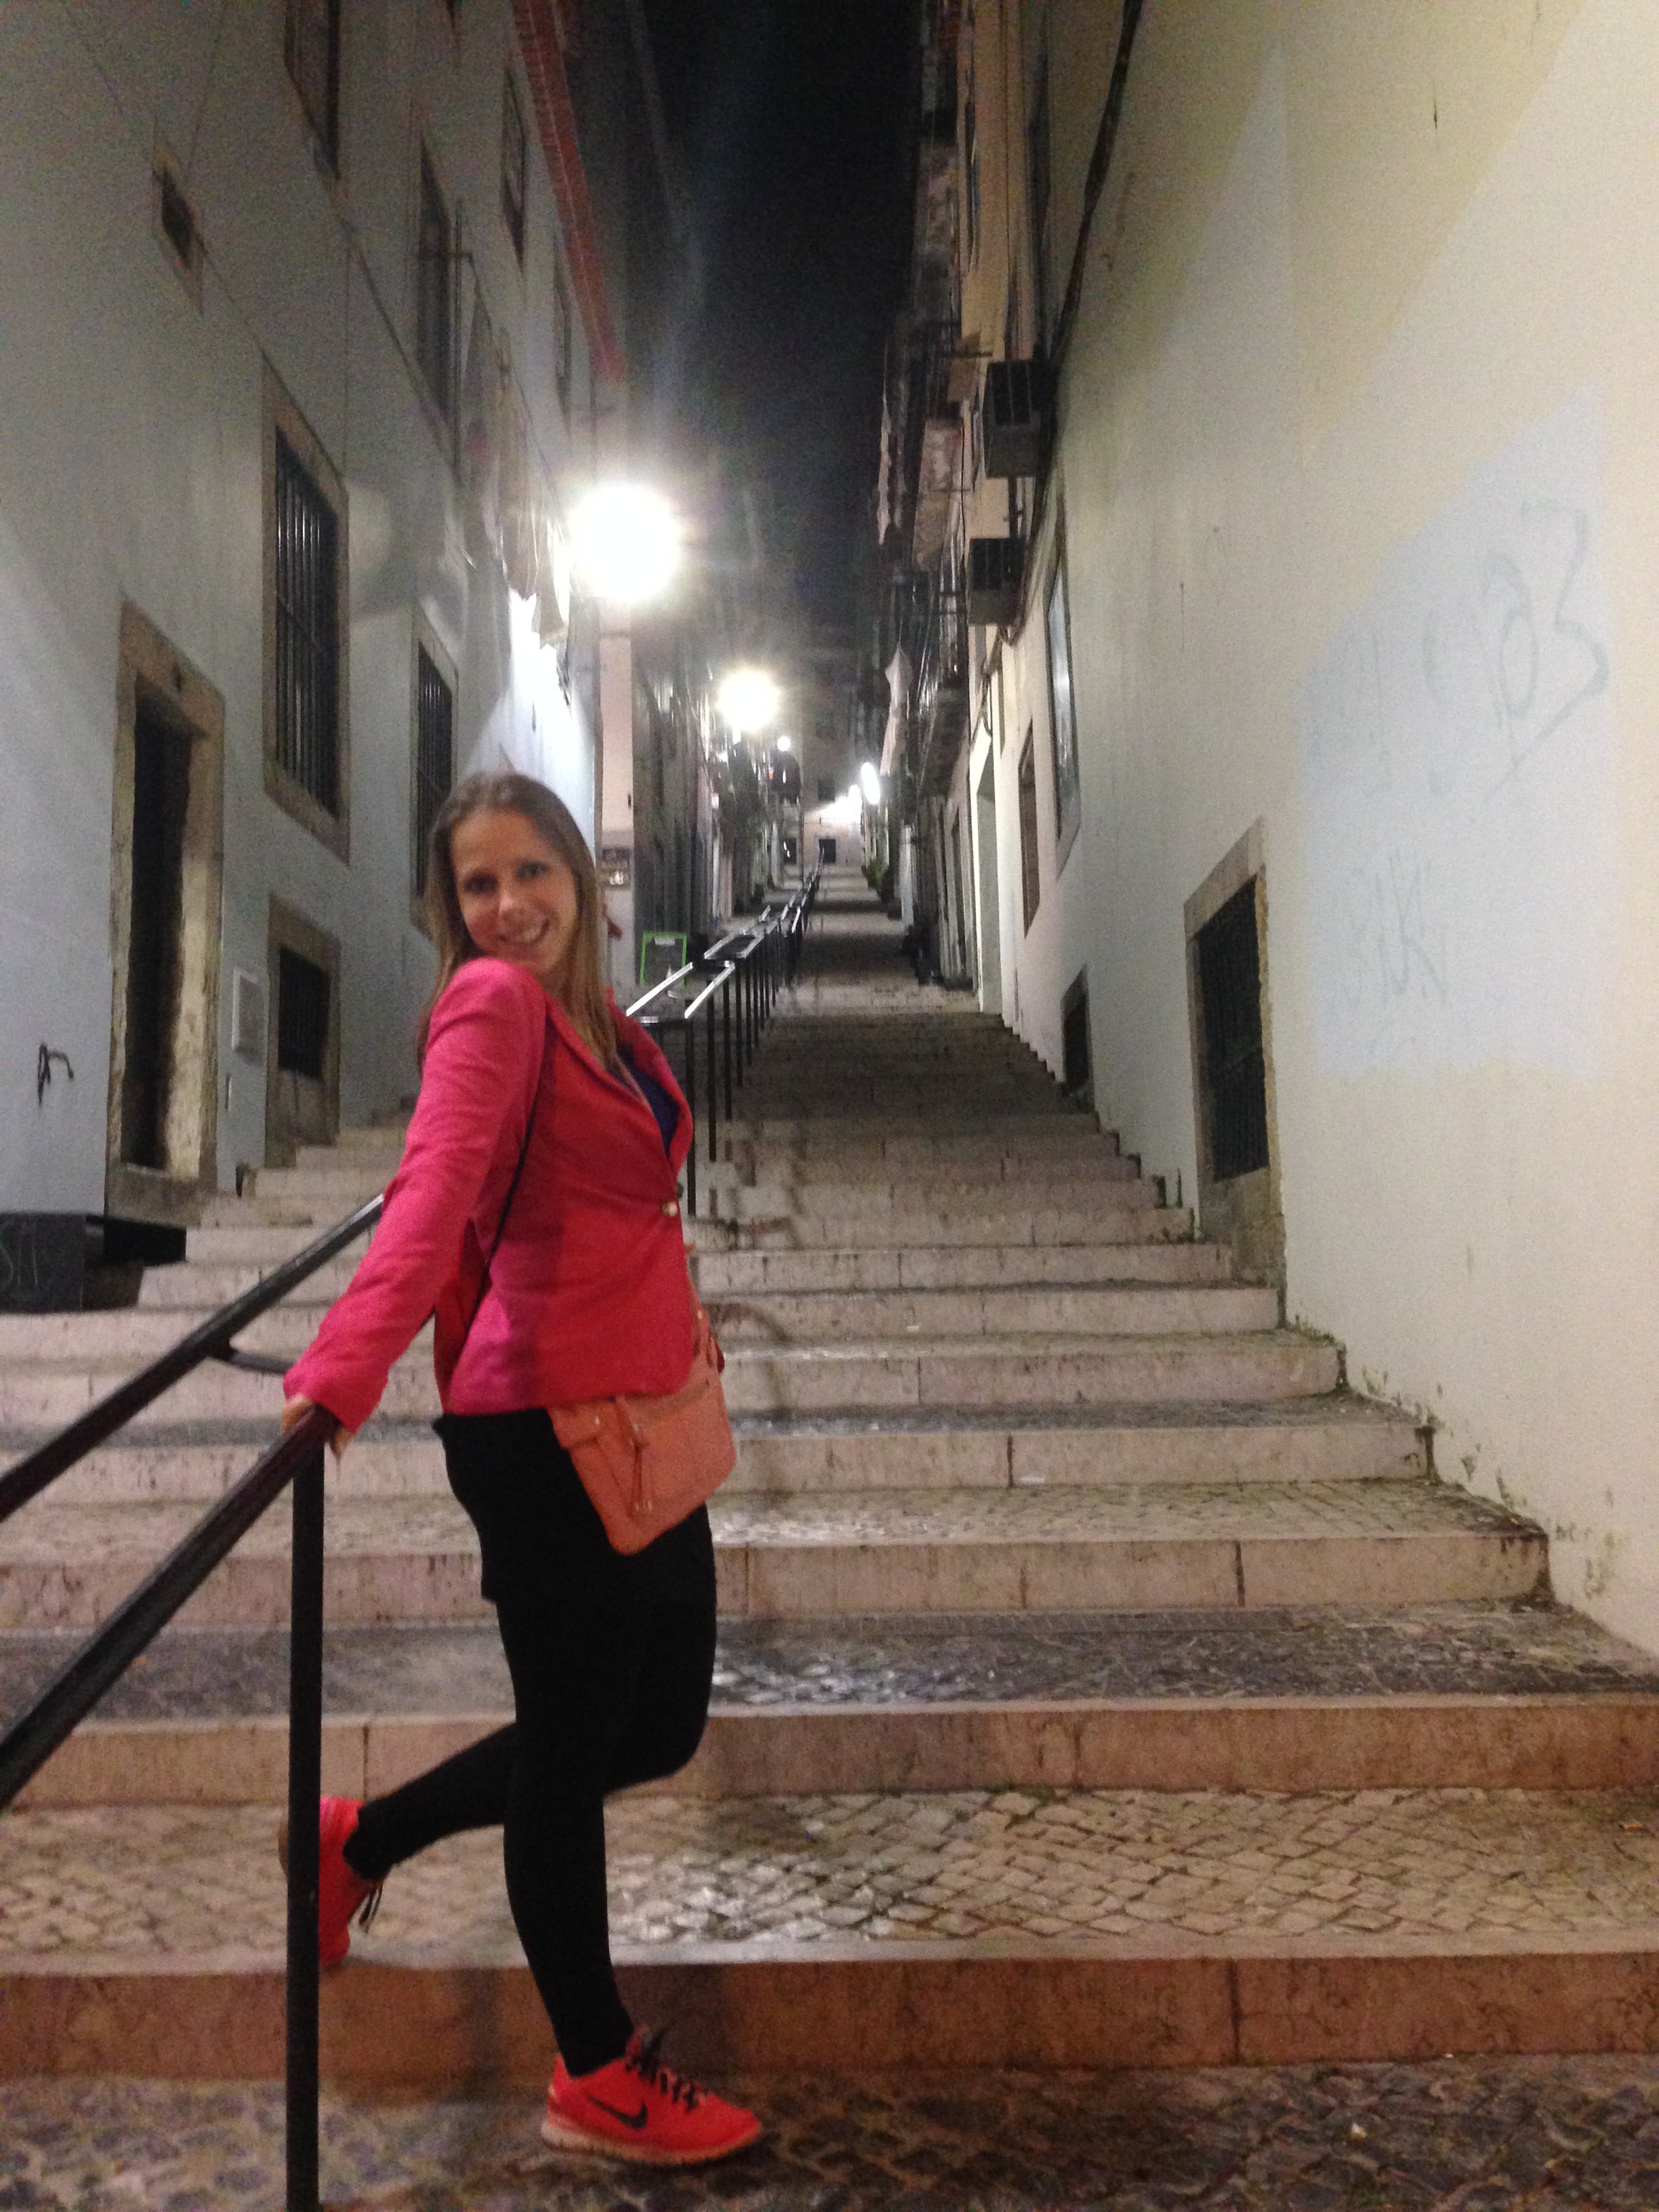 visiter Lisbonne